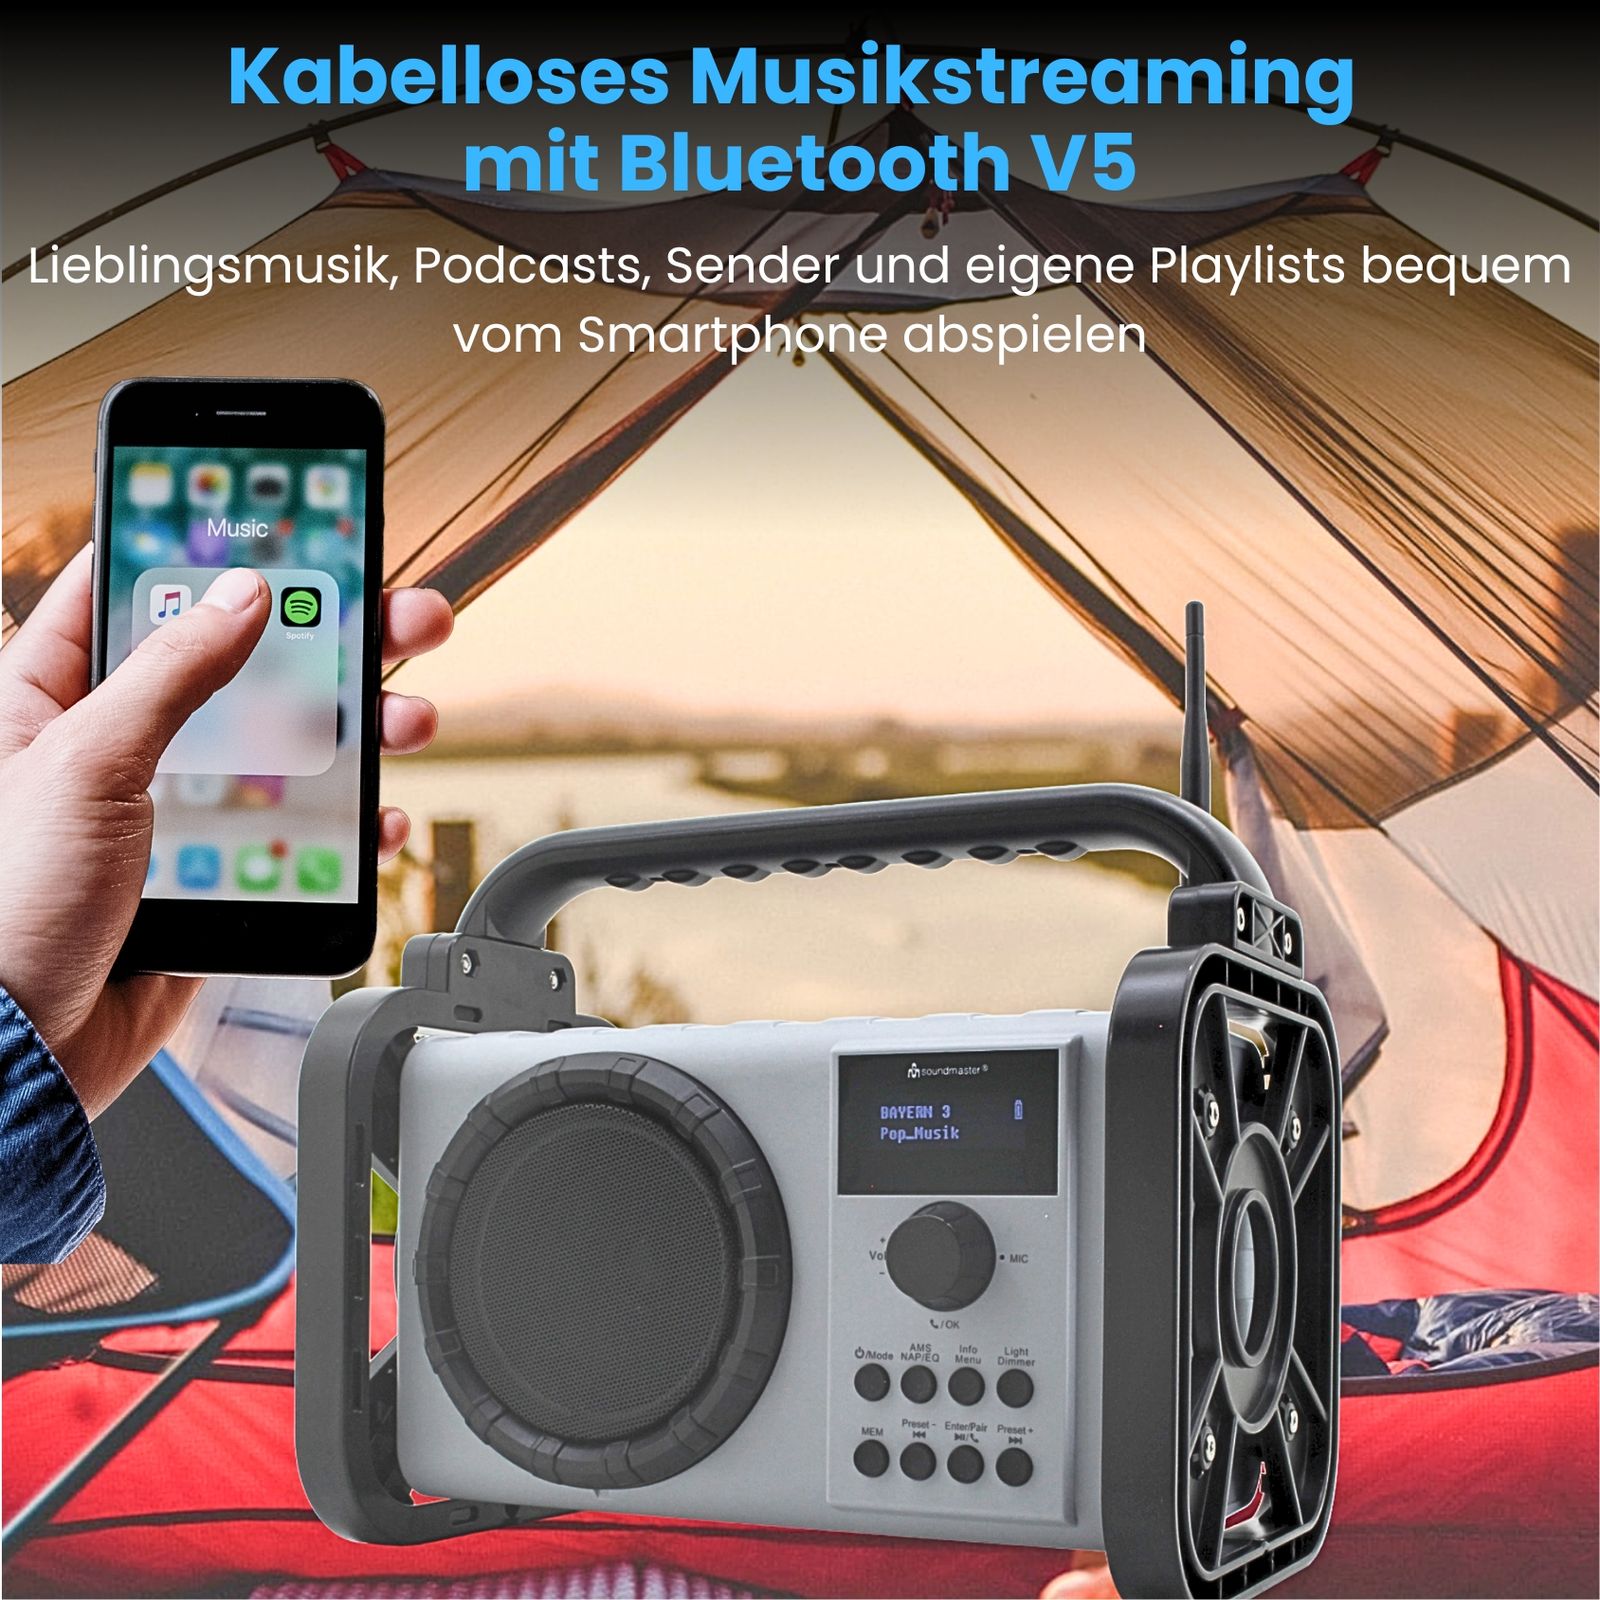 Radio de chantier Soundmaster DAB80SG avec DAB+ FM Bluetooth et batterie Li-Ion IP44 étanche à la poussière et aux éclaboussures